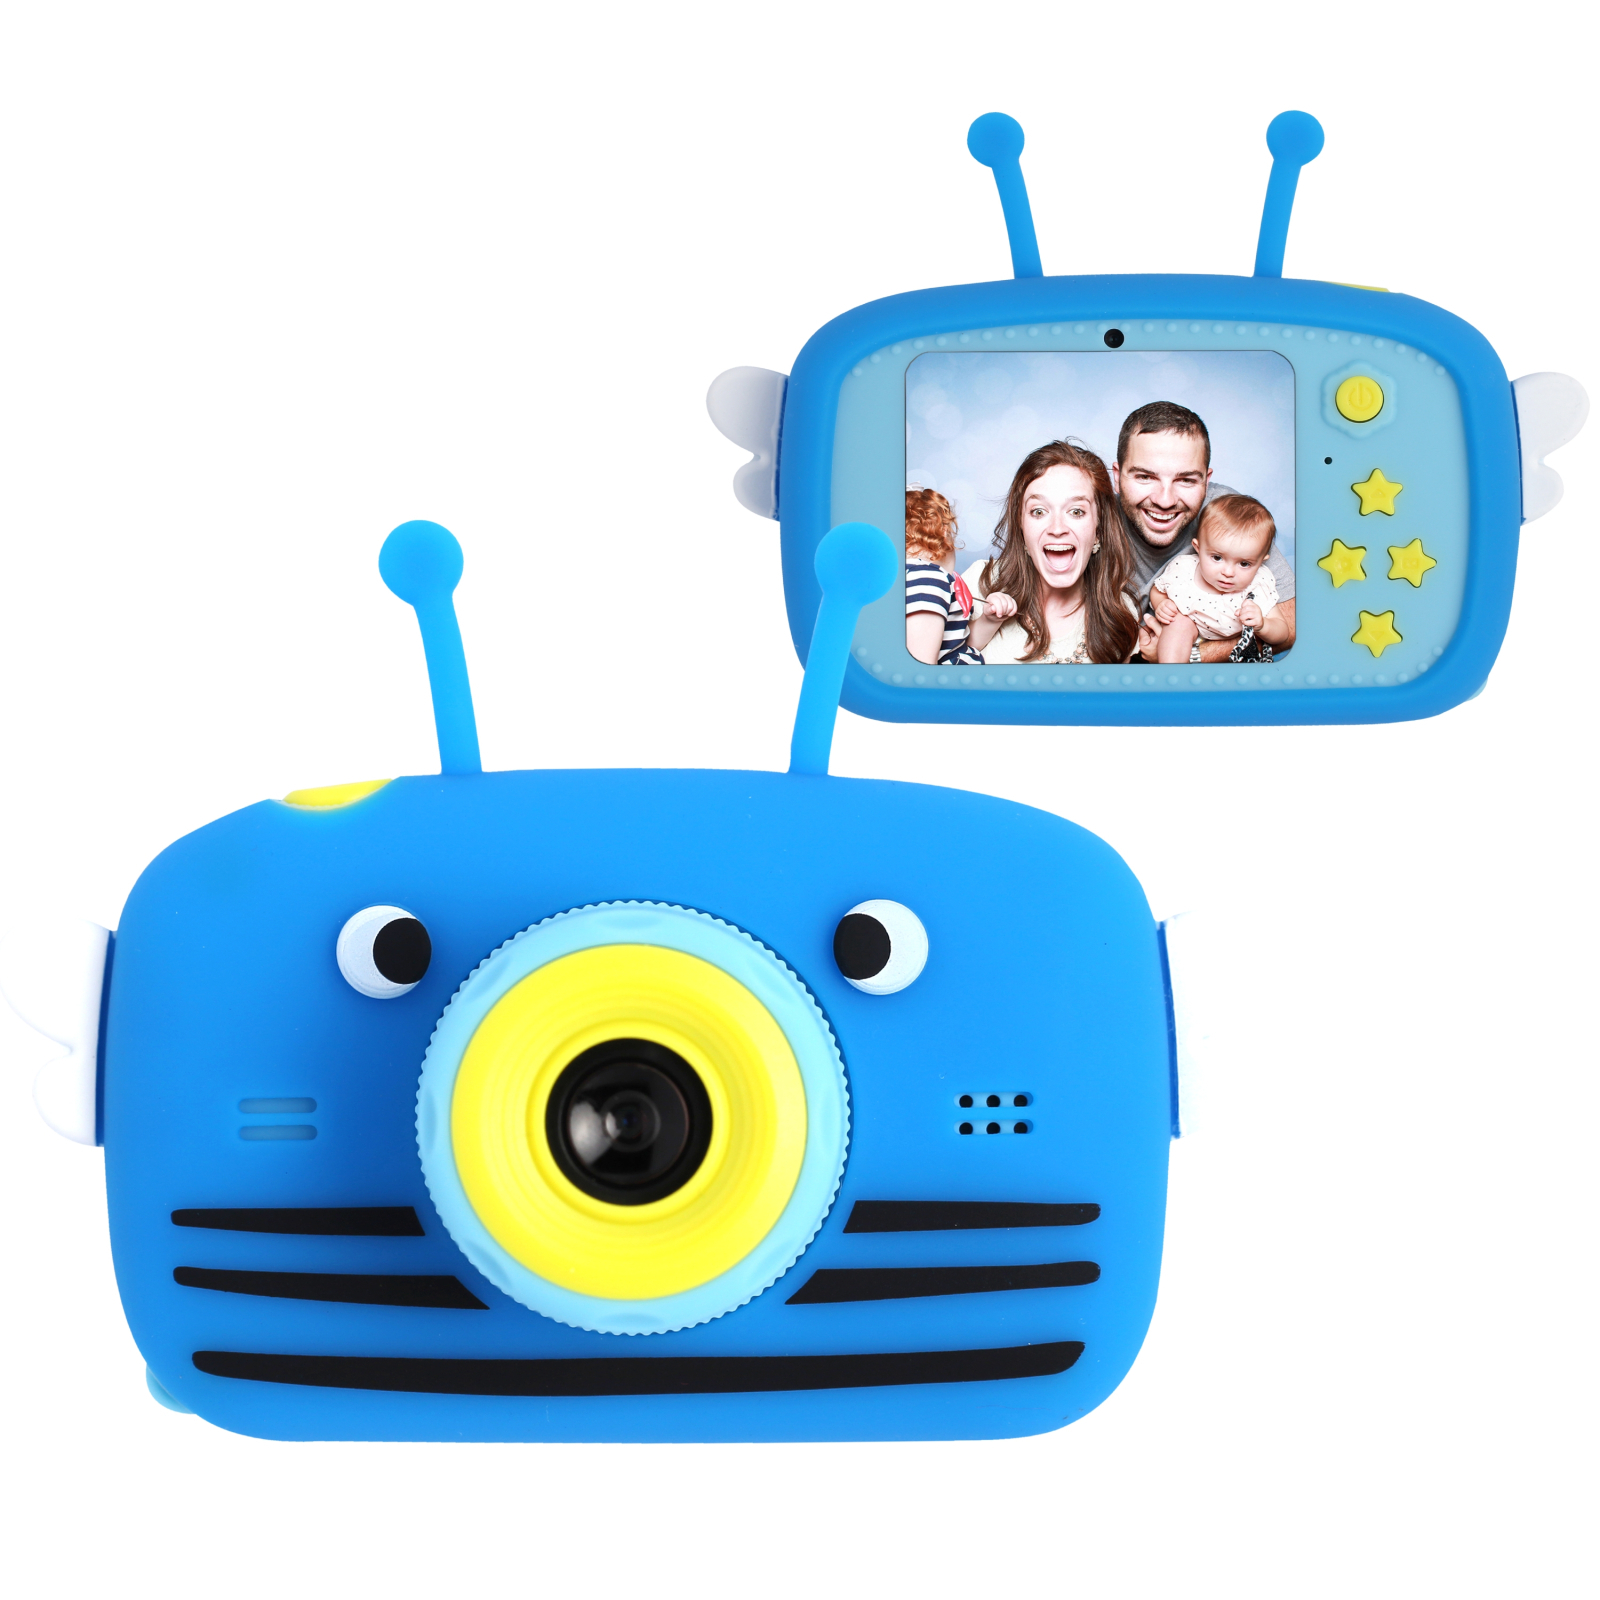 Интерактивная игрушка XoKo Bee Dual Lens Цифровой детский фотоаппарат розовый (KVR-100-PN)